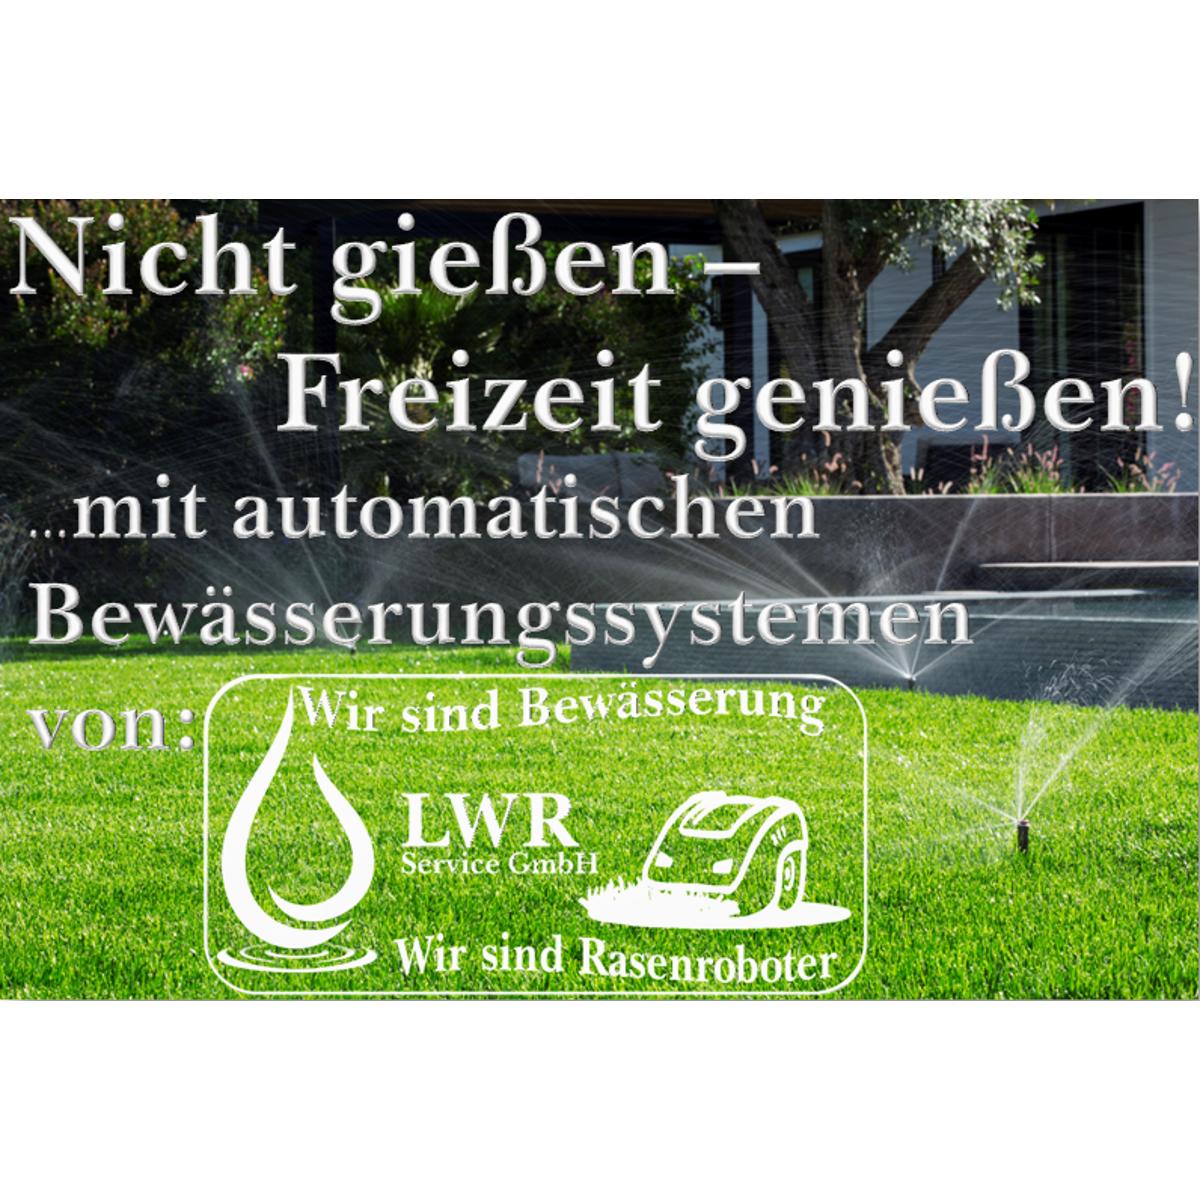 Kundenbild groß 15 LWR Service GmbH